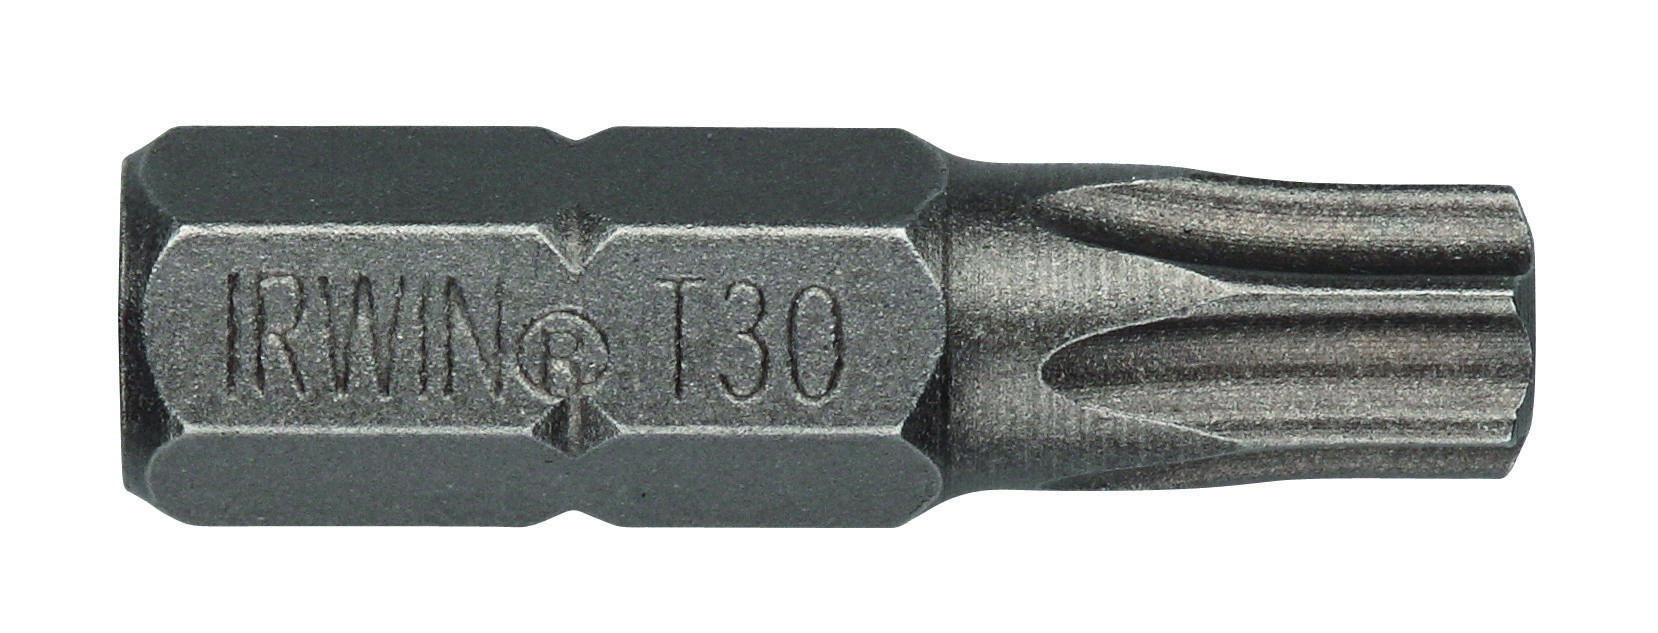 bit nástavec TORX 20  25mm (10ks)  IRWIN 0.09 Kg MAXMIX Sklad14 671143 17